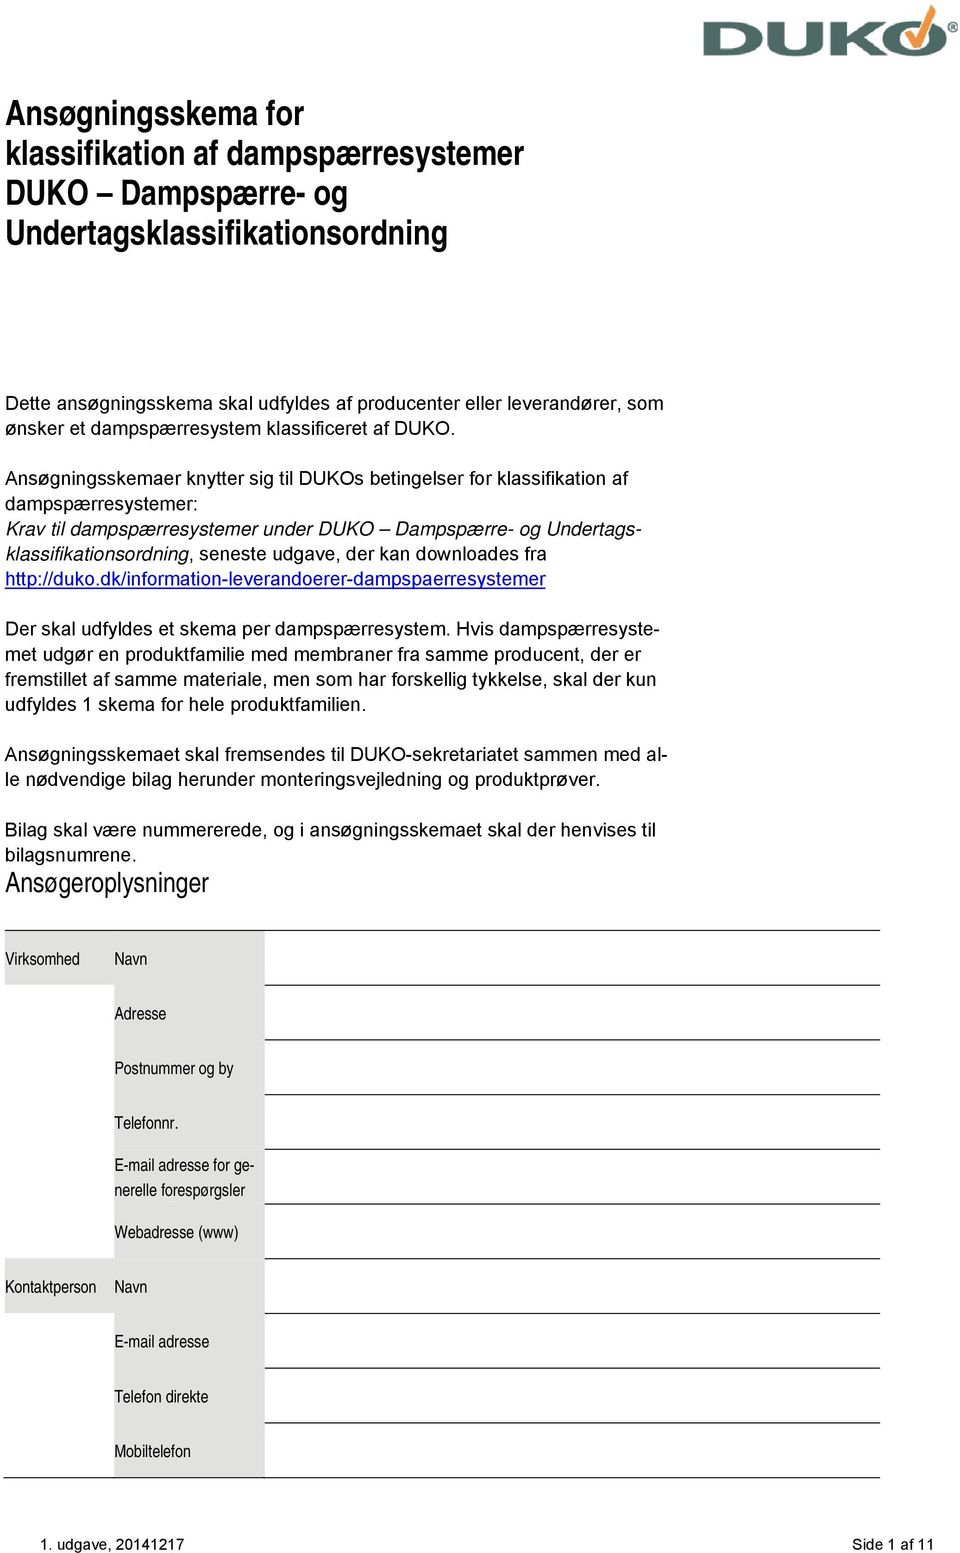 Ansøgningsskema for klassifikation af dampspærresystemer DUKO Dampspærre-  og Undertagsklassifikationsordning - PDF Free Download